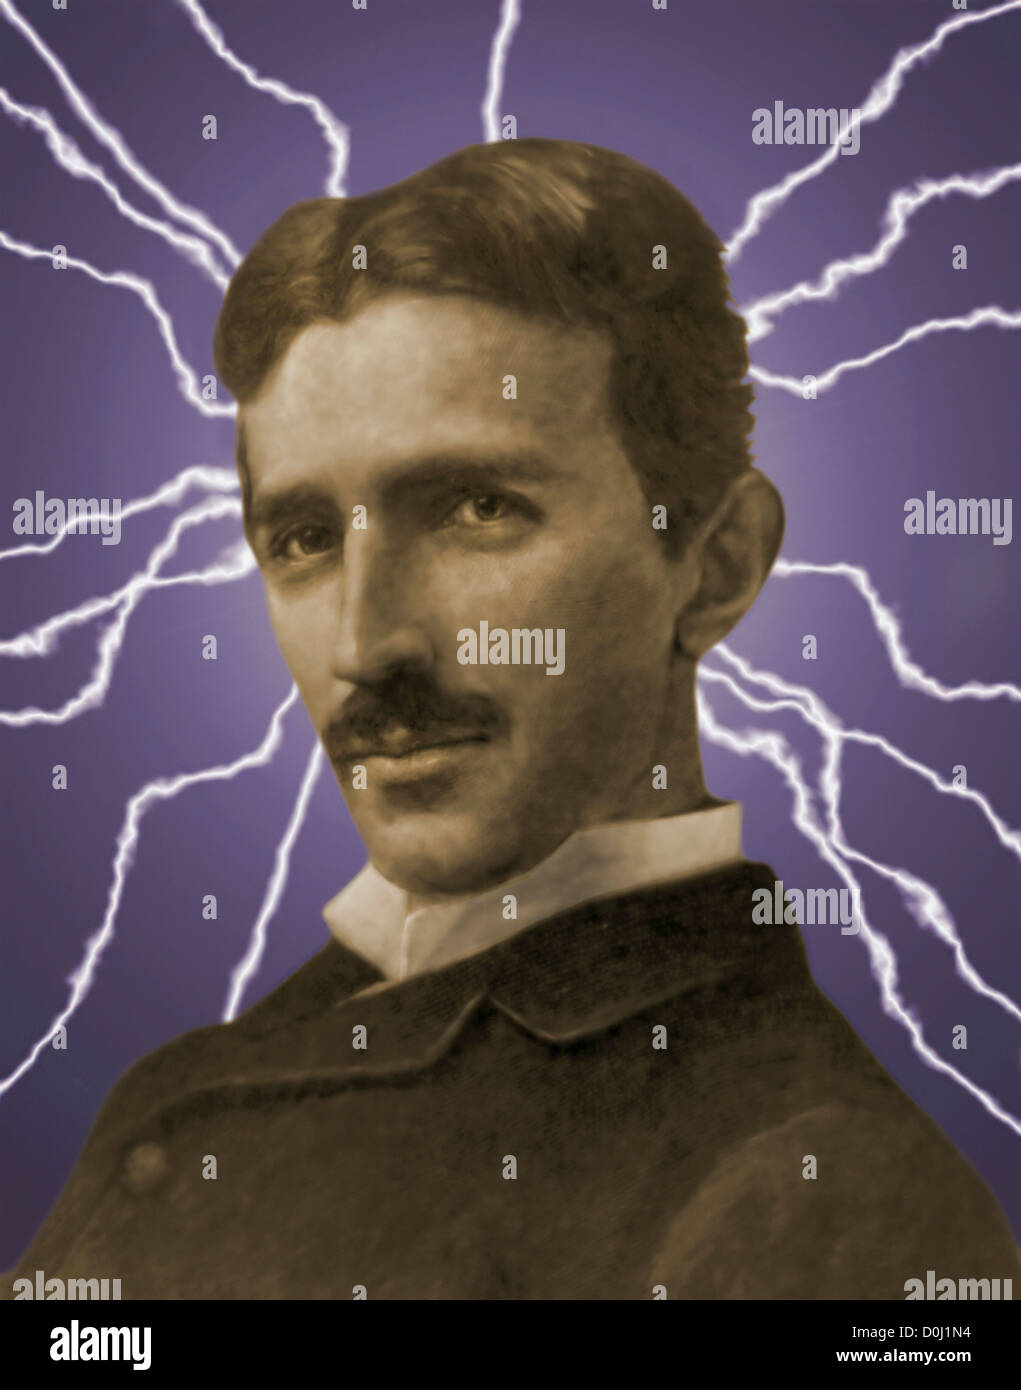 Photo Illustration of Nikola Tesla and Electricity Stock Photo